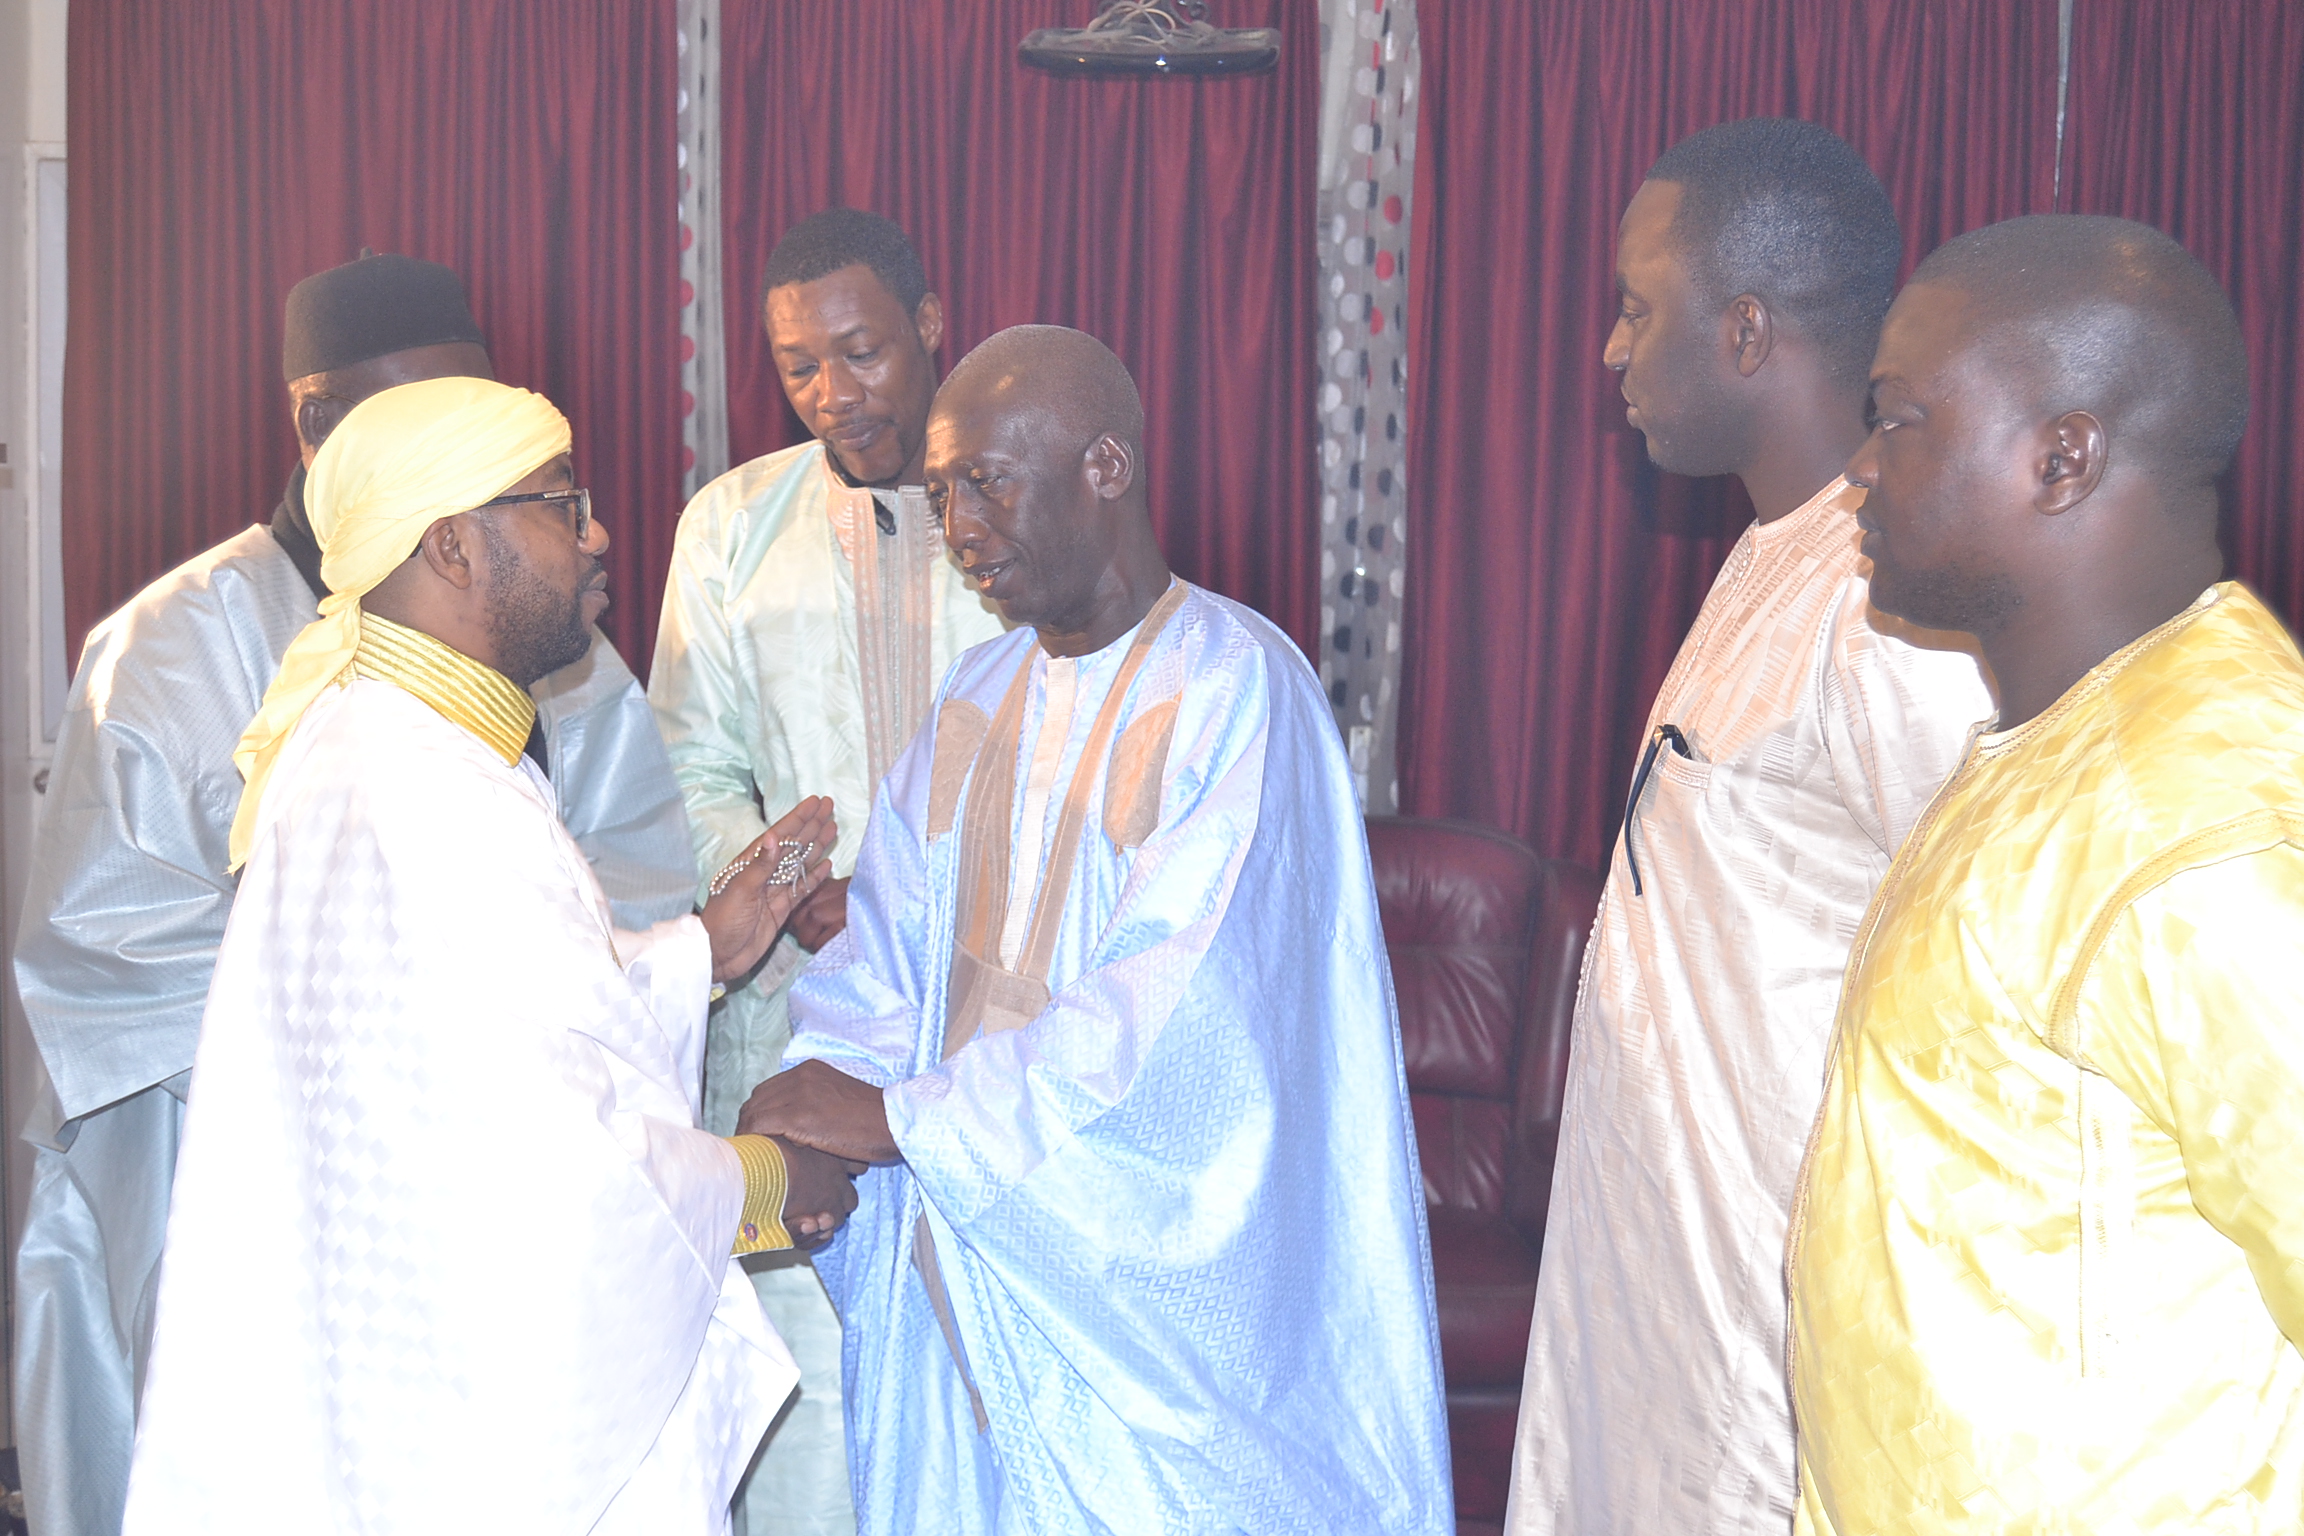 MAOLOUD: Visite officielle du ministre Cheikh Mbacké Sakho chez Sheikh ALASSANE SENE à Ouest foire.